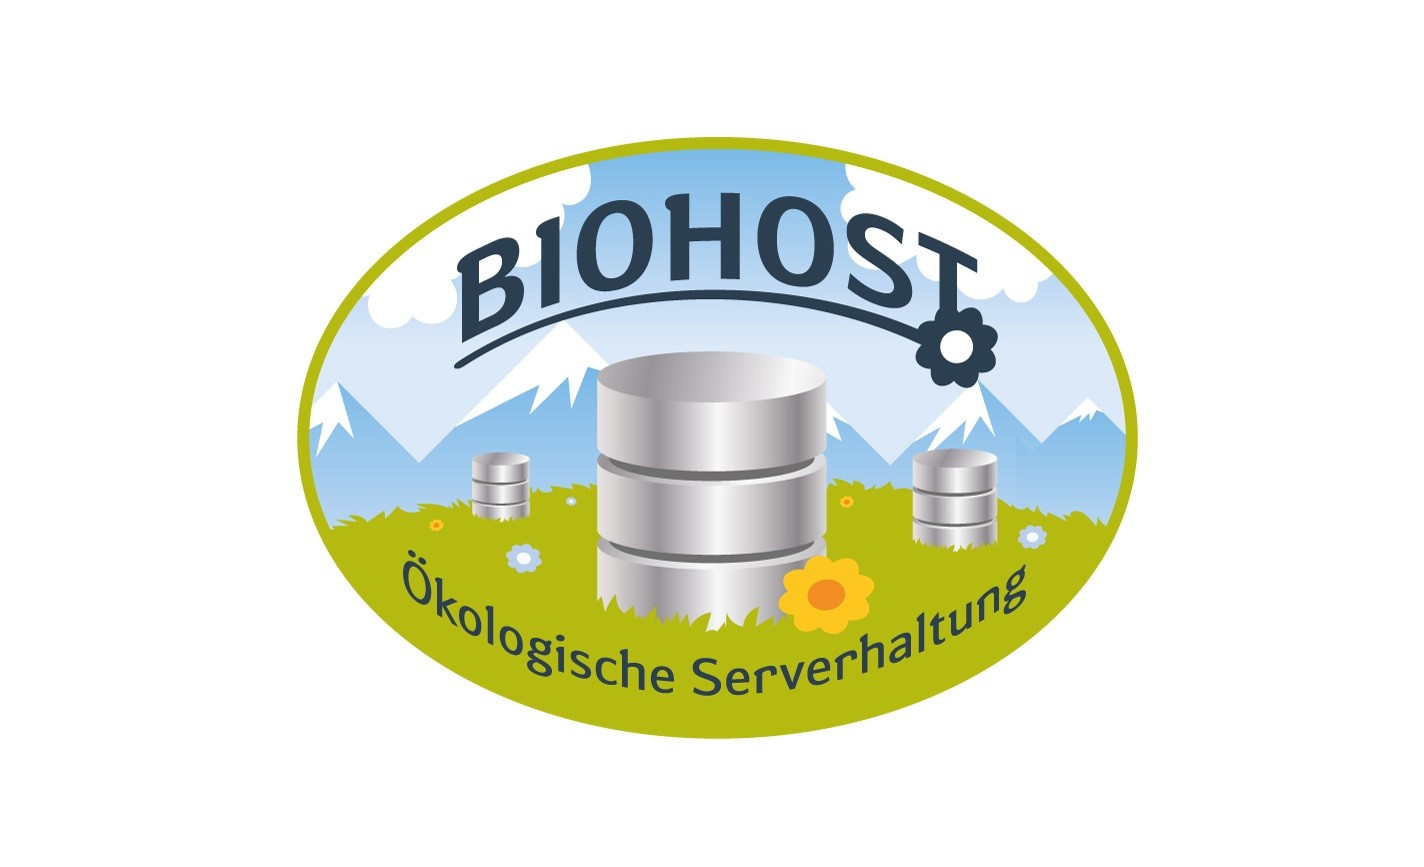 Biohost Siegel für ökologische Serverhaltung